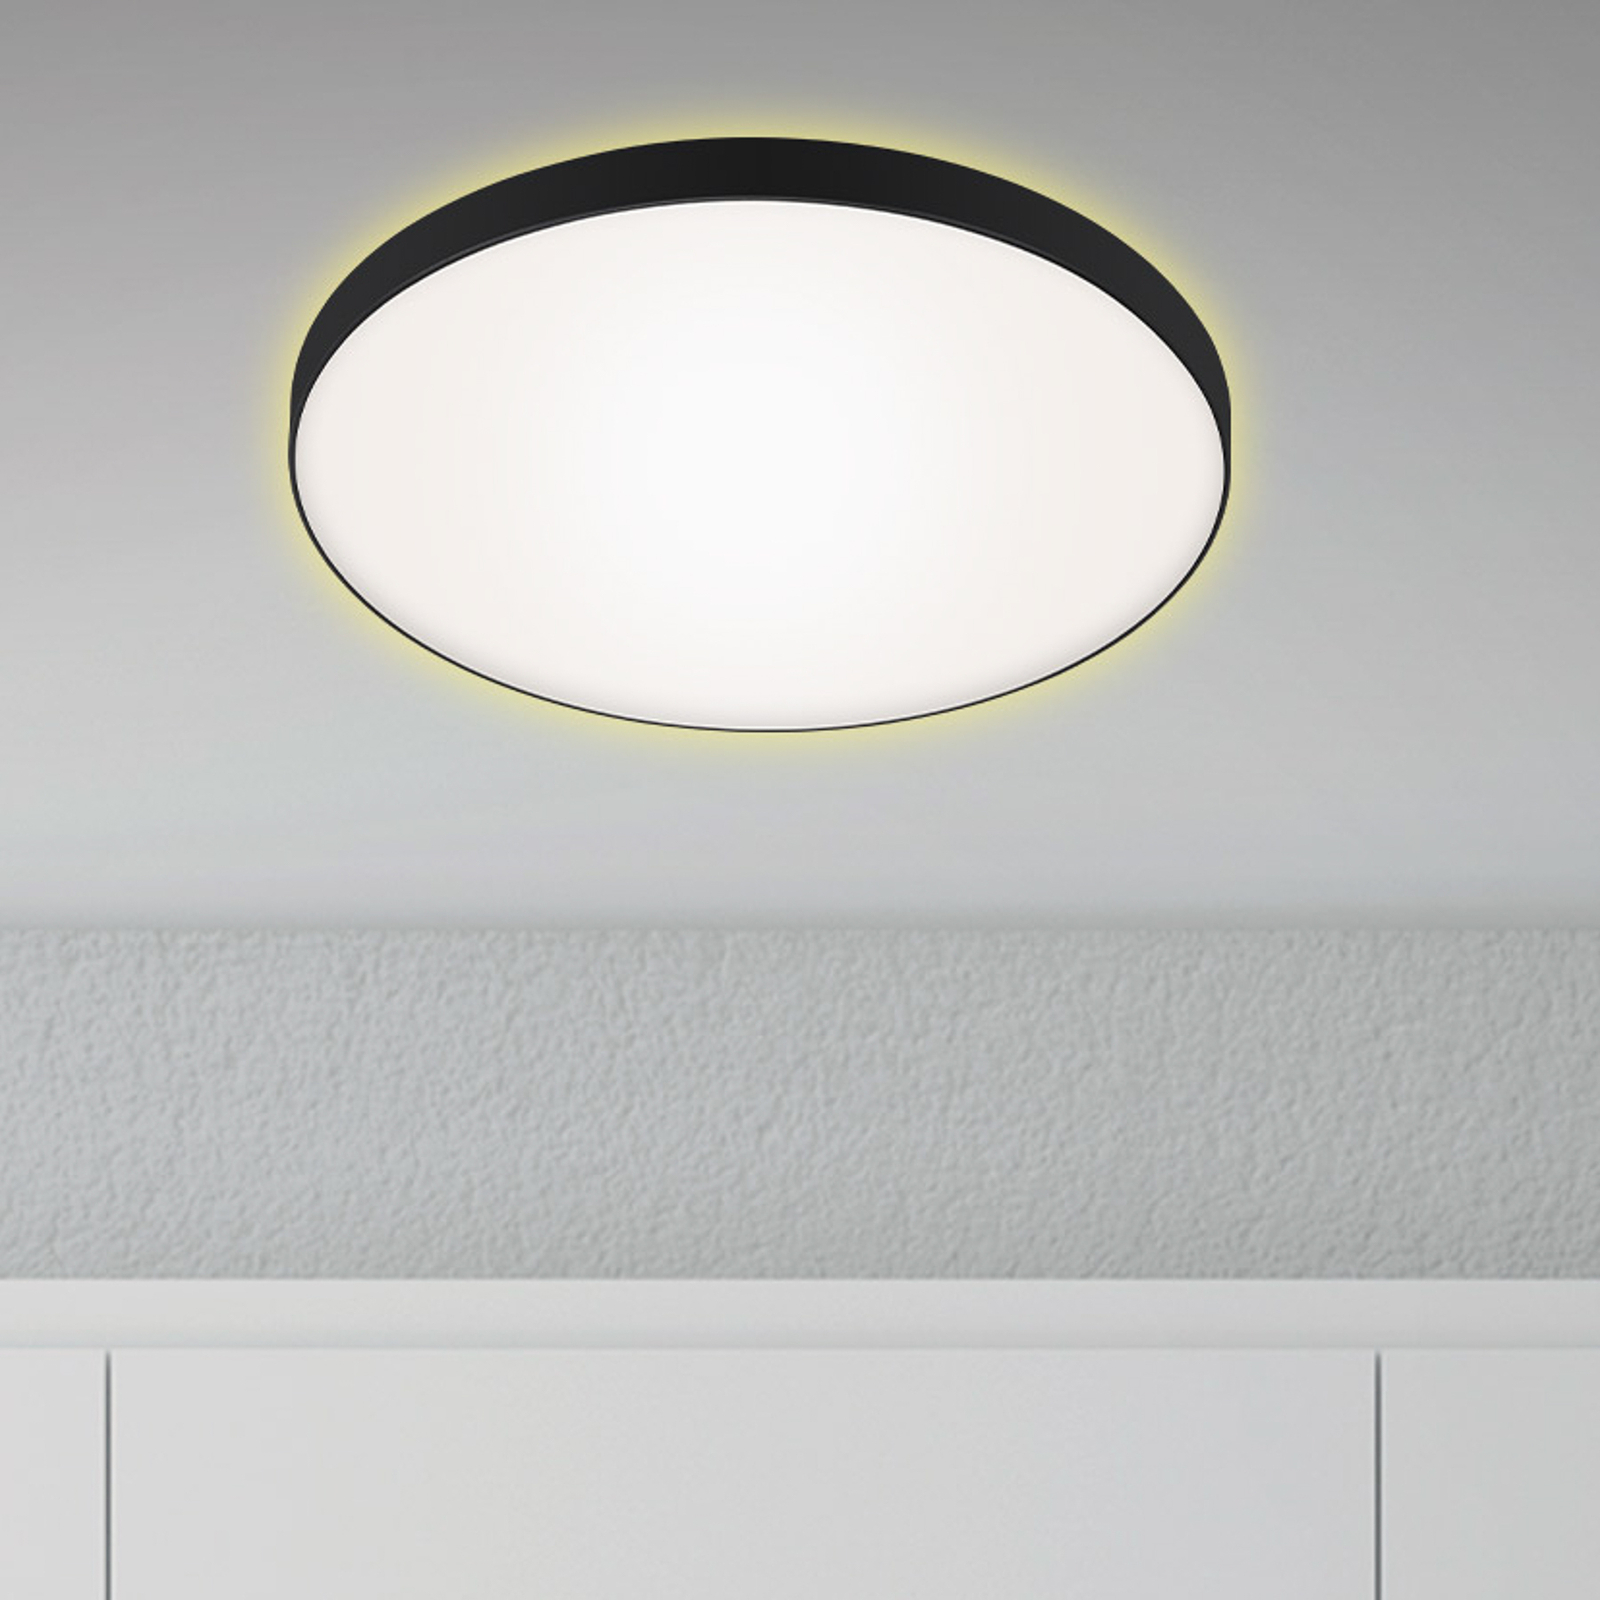 LED plafondlamp Flet met Backlight, Ø 35,5 cm